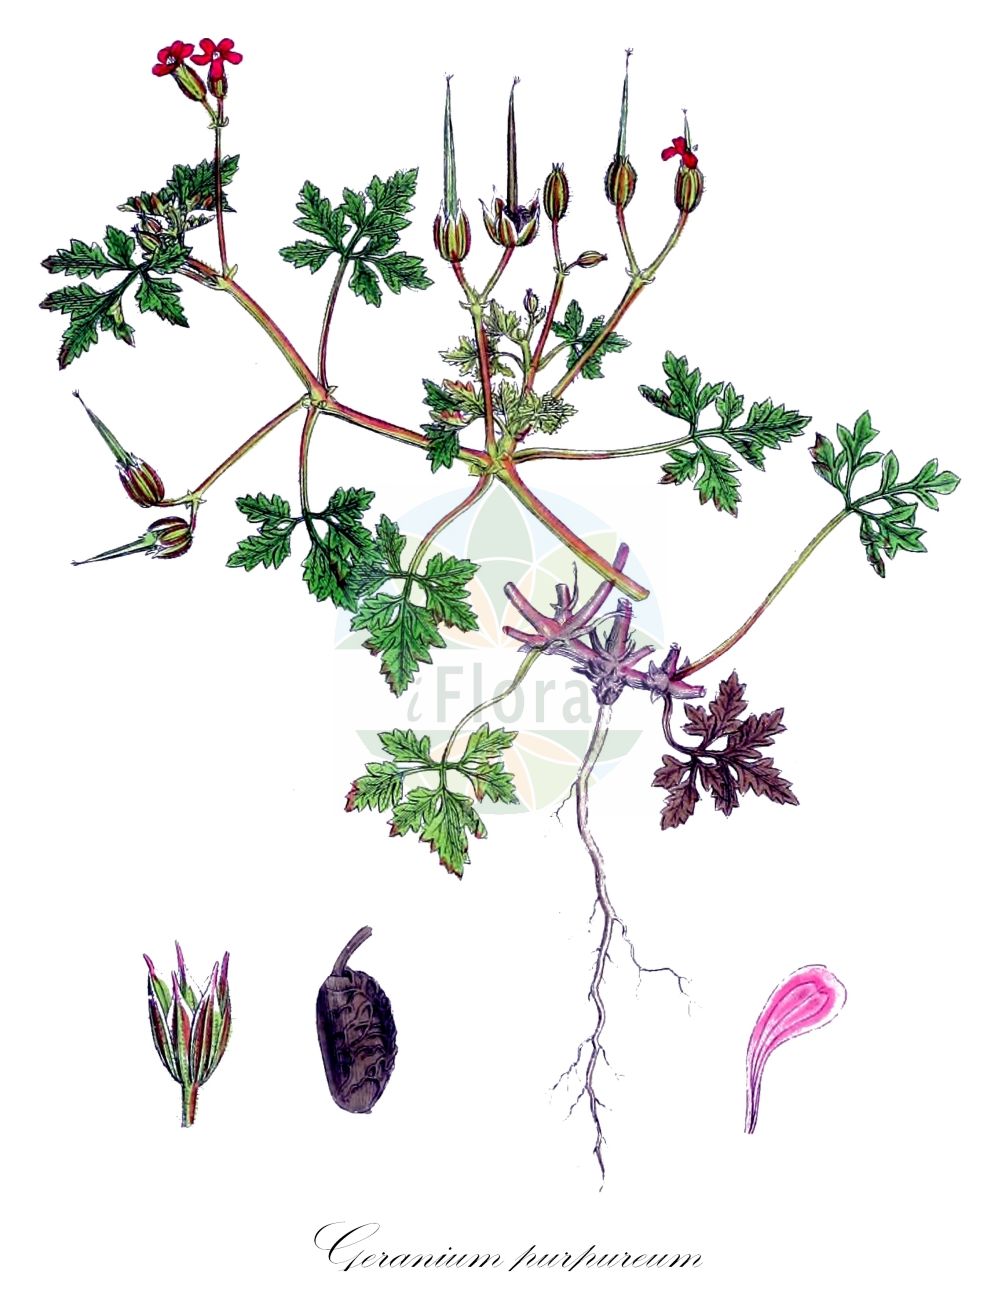 Historische Abbildung von Geranium purpureum (Purpur-Storchschnabel - Little-Robin). Das Bild zeigt Blatt, Bluete, Frucht und Same. ---- Historical Drawing of Geranium purpureum (Purpur-Storchschnabel - Little-Robin). The image is showing leaf, flower, fruit and seed.(Geranium purpureum,Purpur-Storchschnabel,Little-Robin,Geranium elamellatum,Geranium intricatum,Geranium mediterraneum,Geranium minutiflorum,Geranium modestum,Geranium purpureum,Geranium villarsianum,Purpur-Storchschnabel,Purpurner Stink-Storchschnabel,Little-Robin,Little-robin Crane's-Bill,Geranium,Storchschnabel,Crane's-bill,Geraniaceae,Storchschnabelgewächse,Geranium family,Blatt,Bluete,Frucht,Same,leaf,flower,fruit,seed,Sowerby (1790-1813))